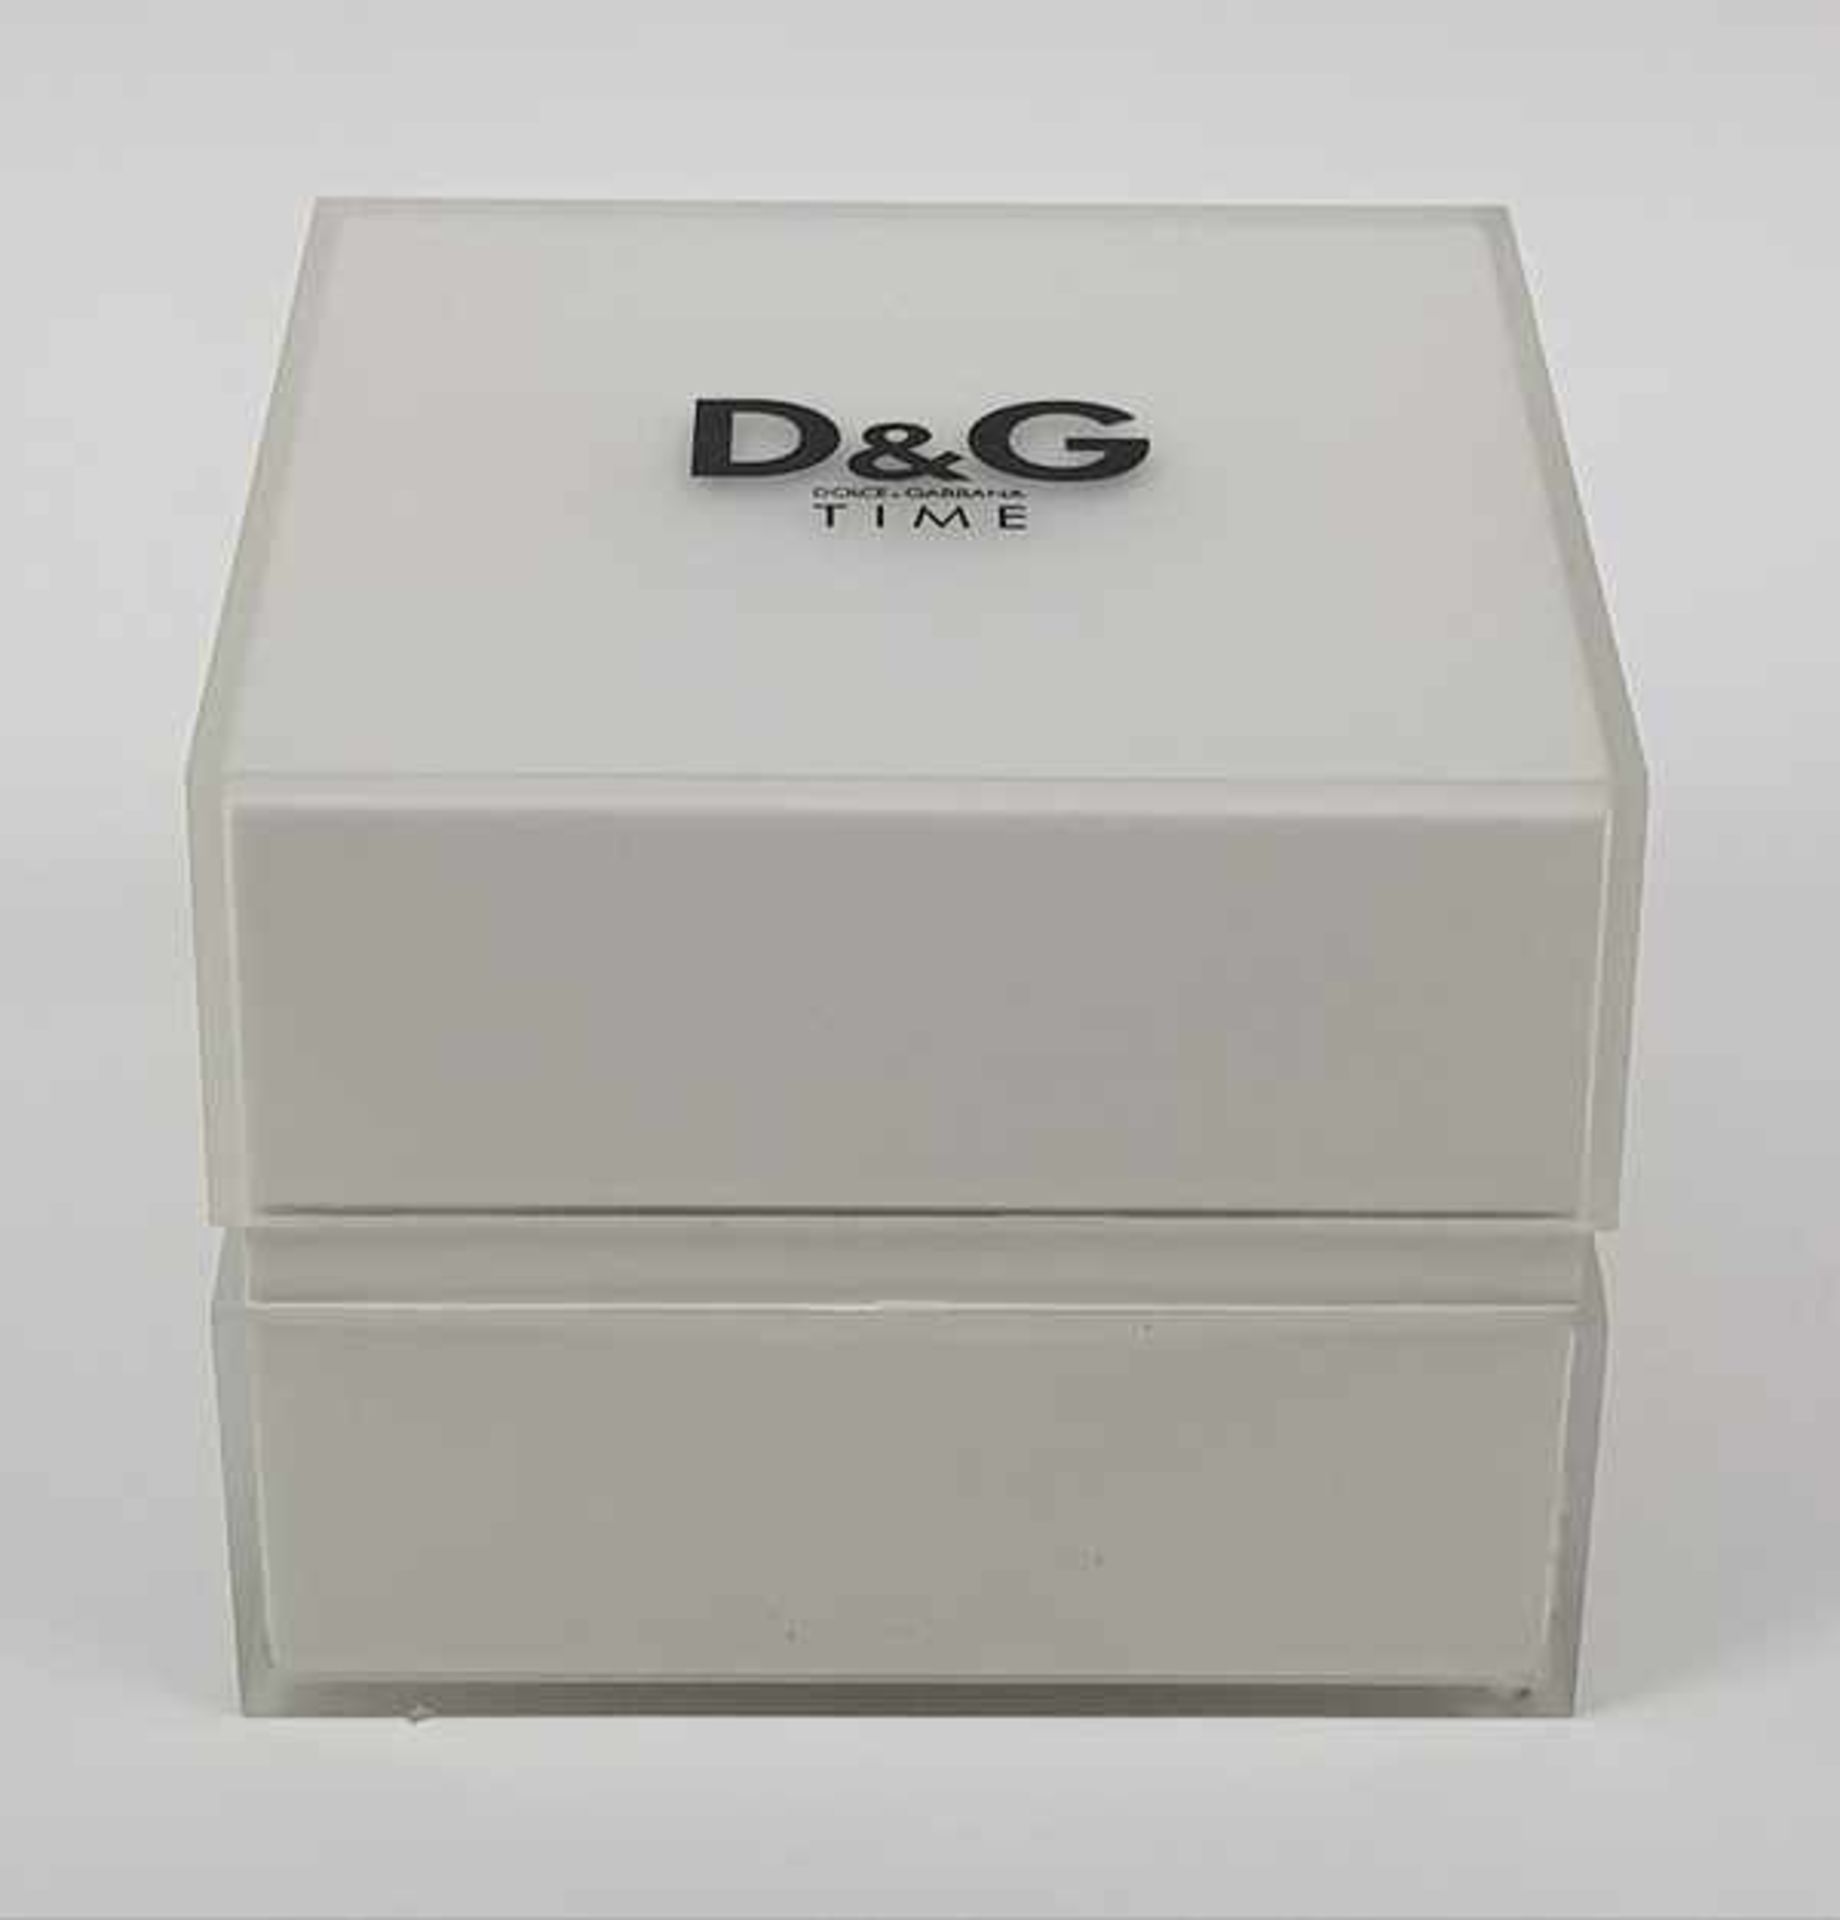 (Design) Dolce & Gabbana horlogeHorloge Dolce & Gabbana in orginele doos. Conditie: Verkleuring - Image 8 of 9